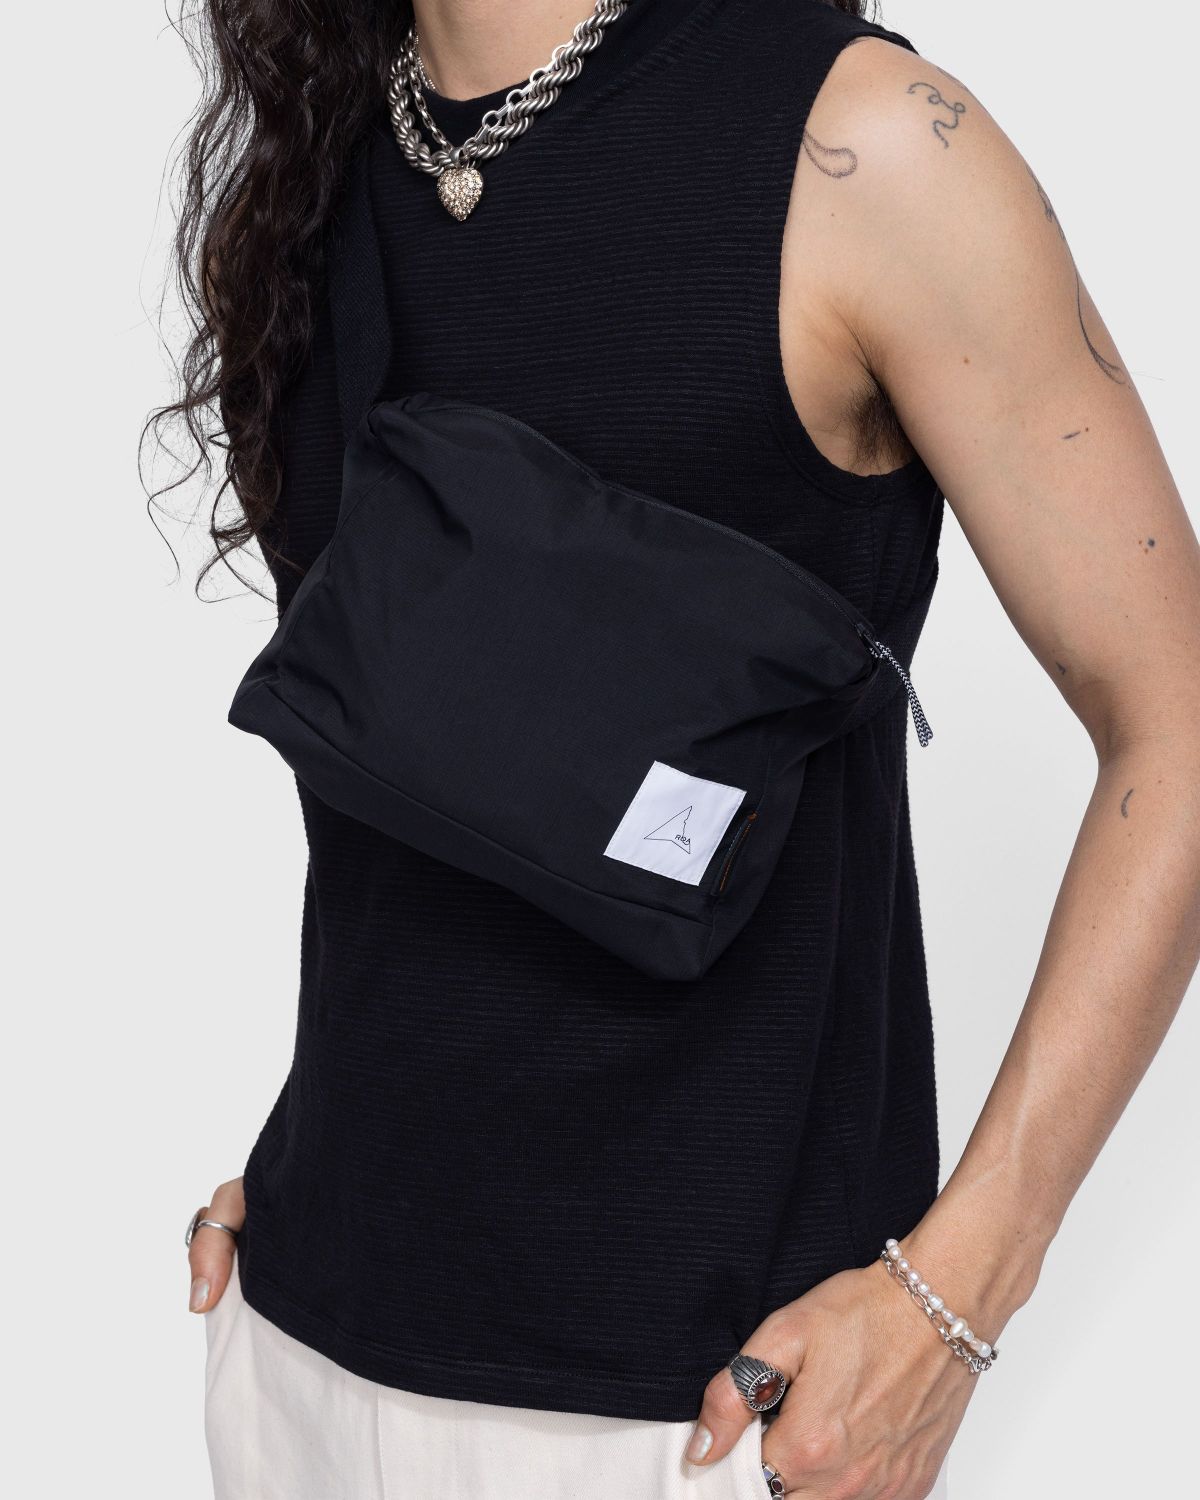 Waterproof Crossbody Bag Black - Waistbags - Black - Image 4